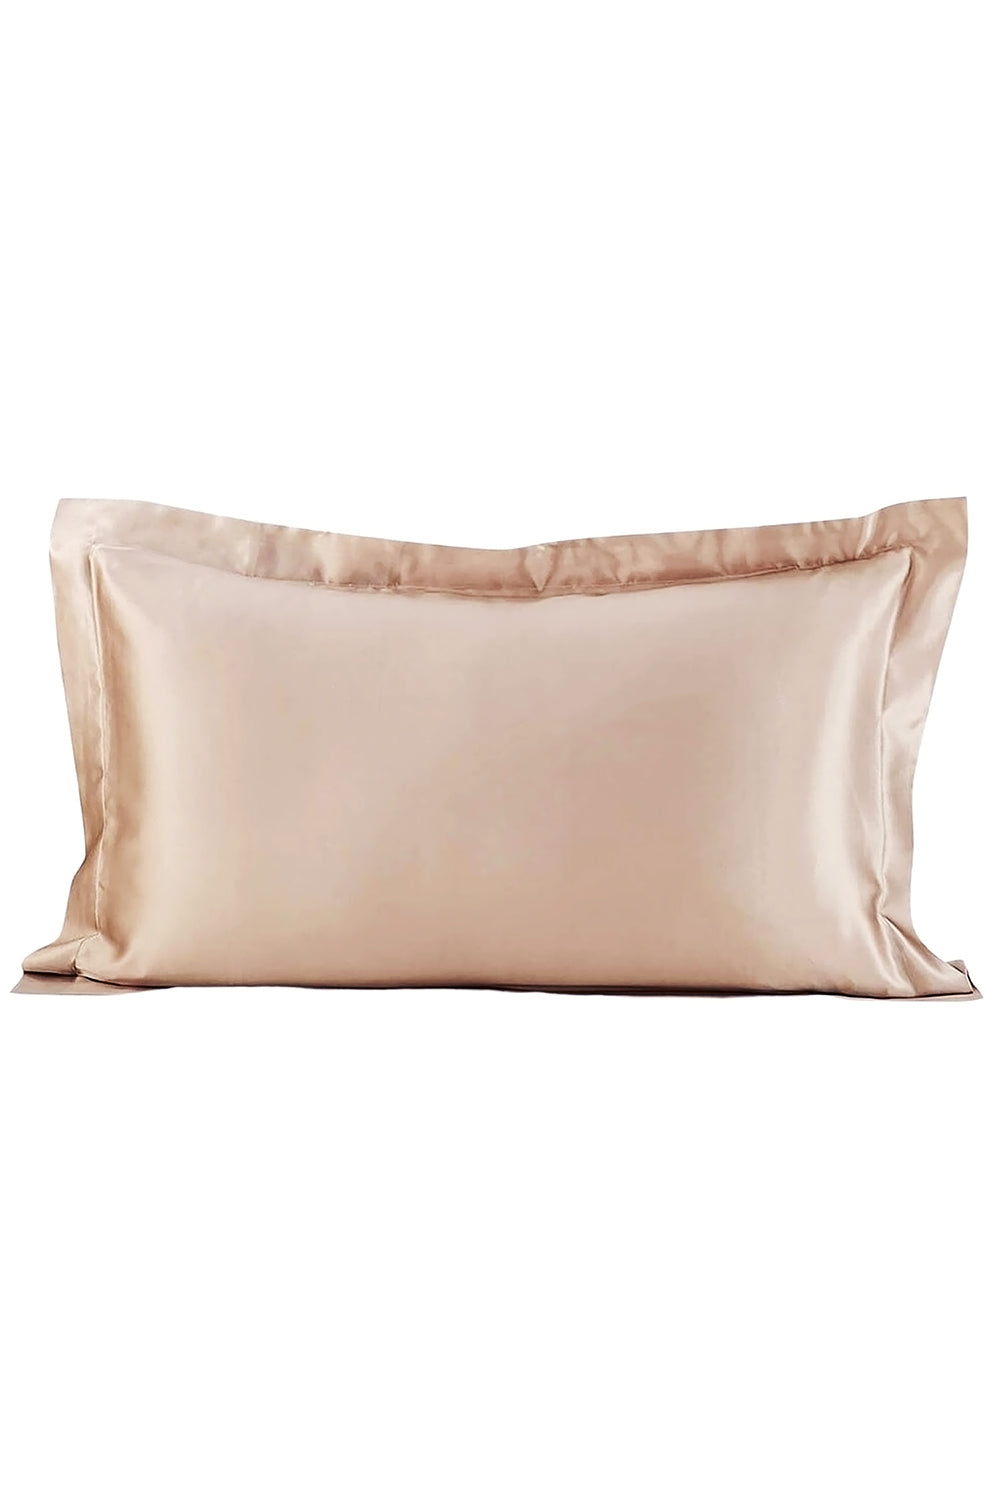 Oxford Silk Pillowcase - Champagne - BASK™